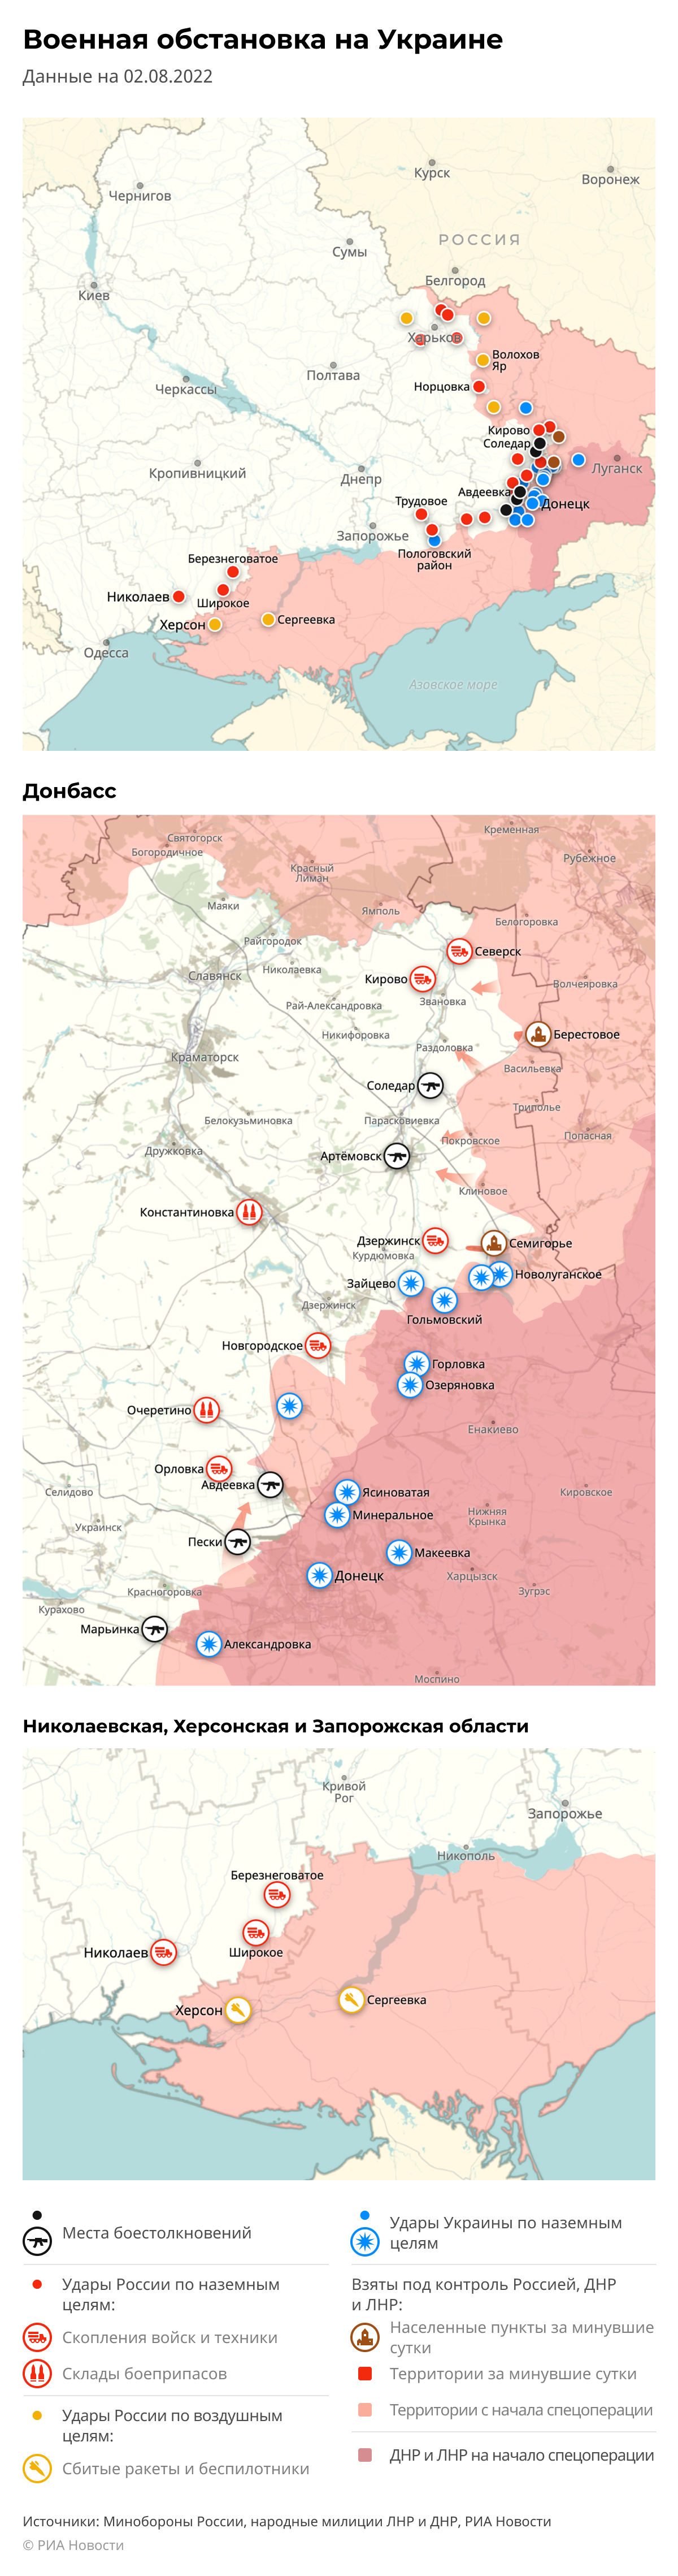 Карта спецоперации Вооруженных сил России на Украине на 02.08.2022